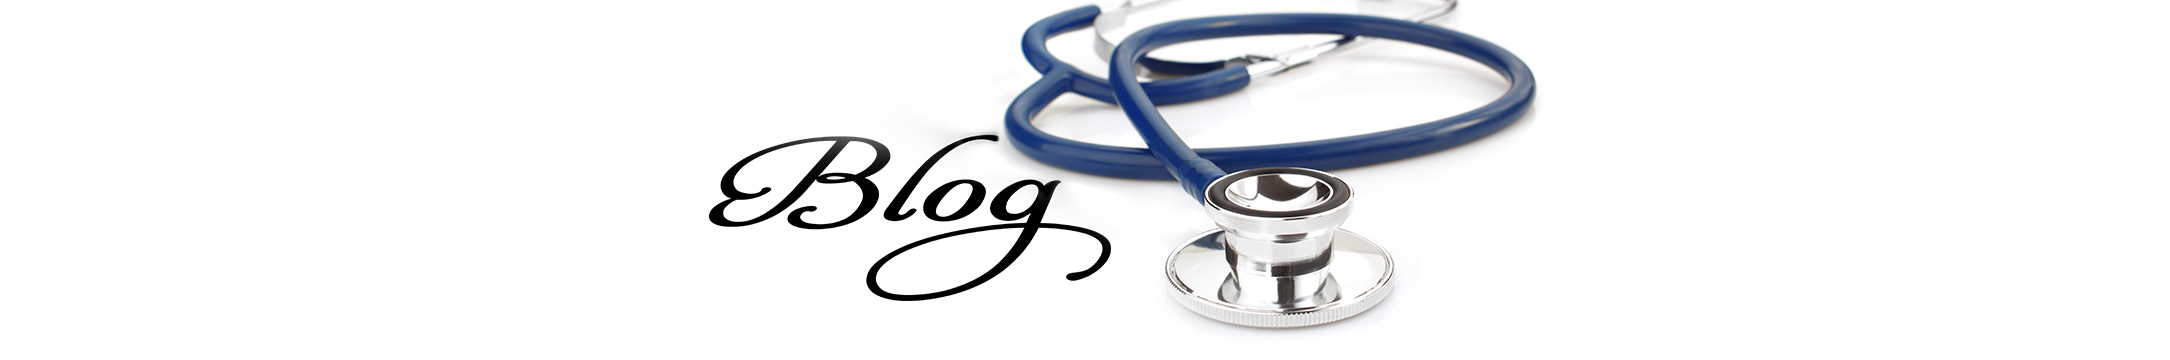 Ames Medical Servies Blog